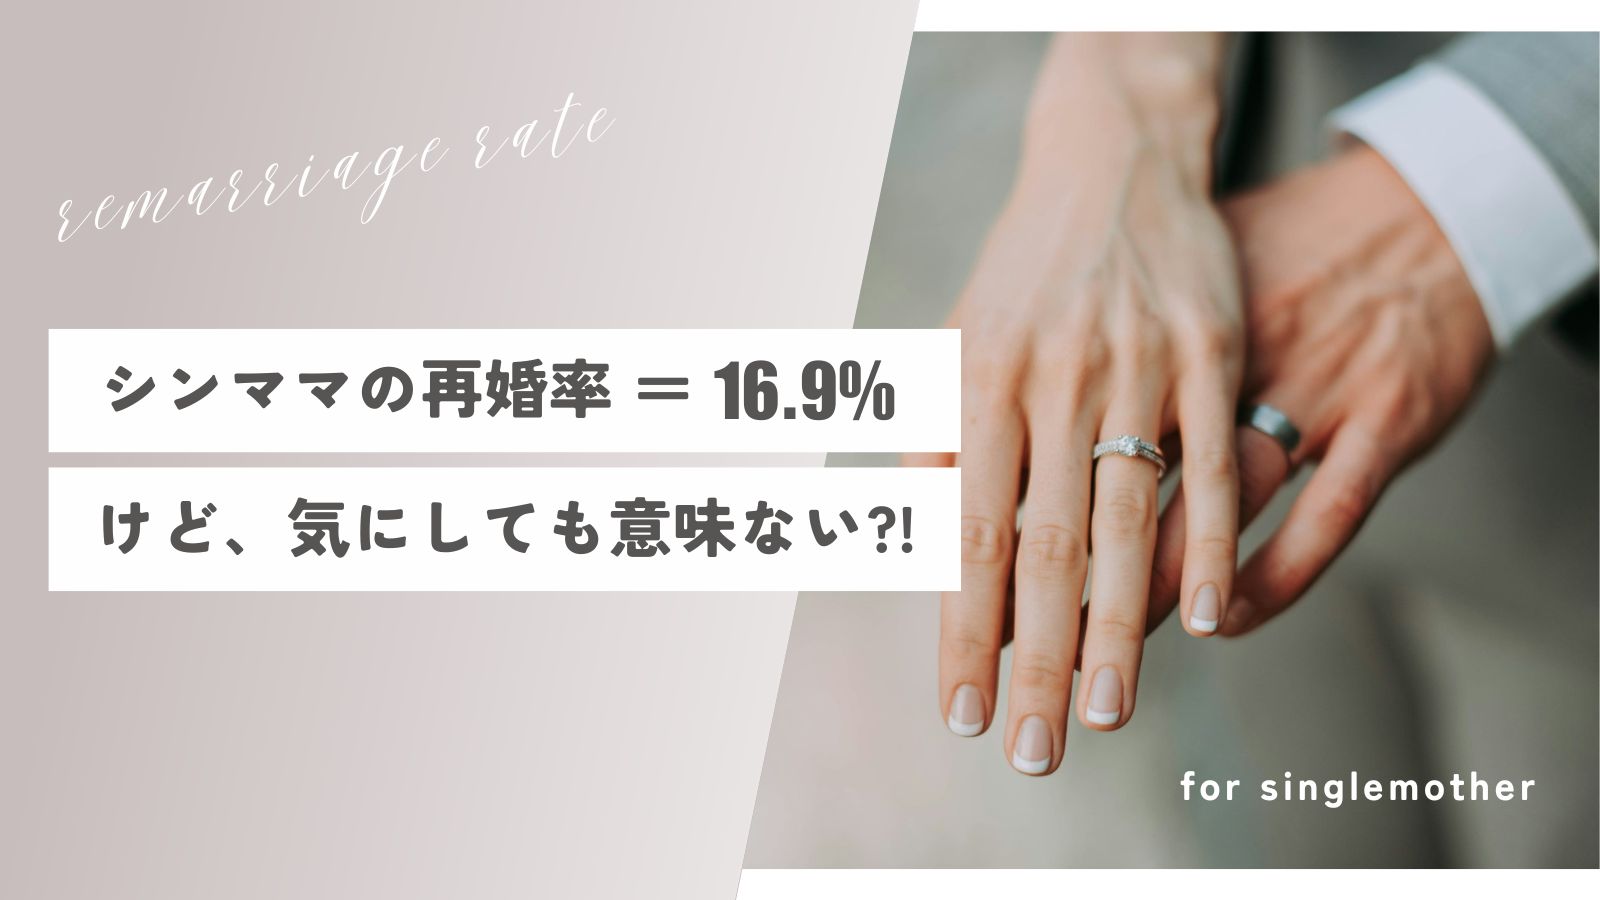 【事実】シングルマザーの再婚率＝16.9%【年齢別データあり】